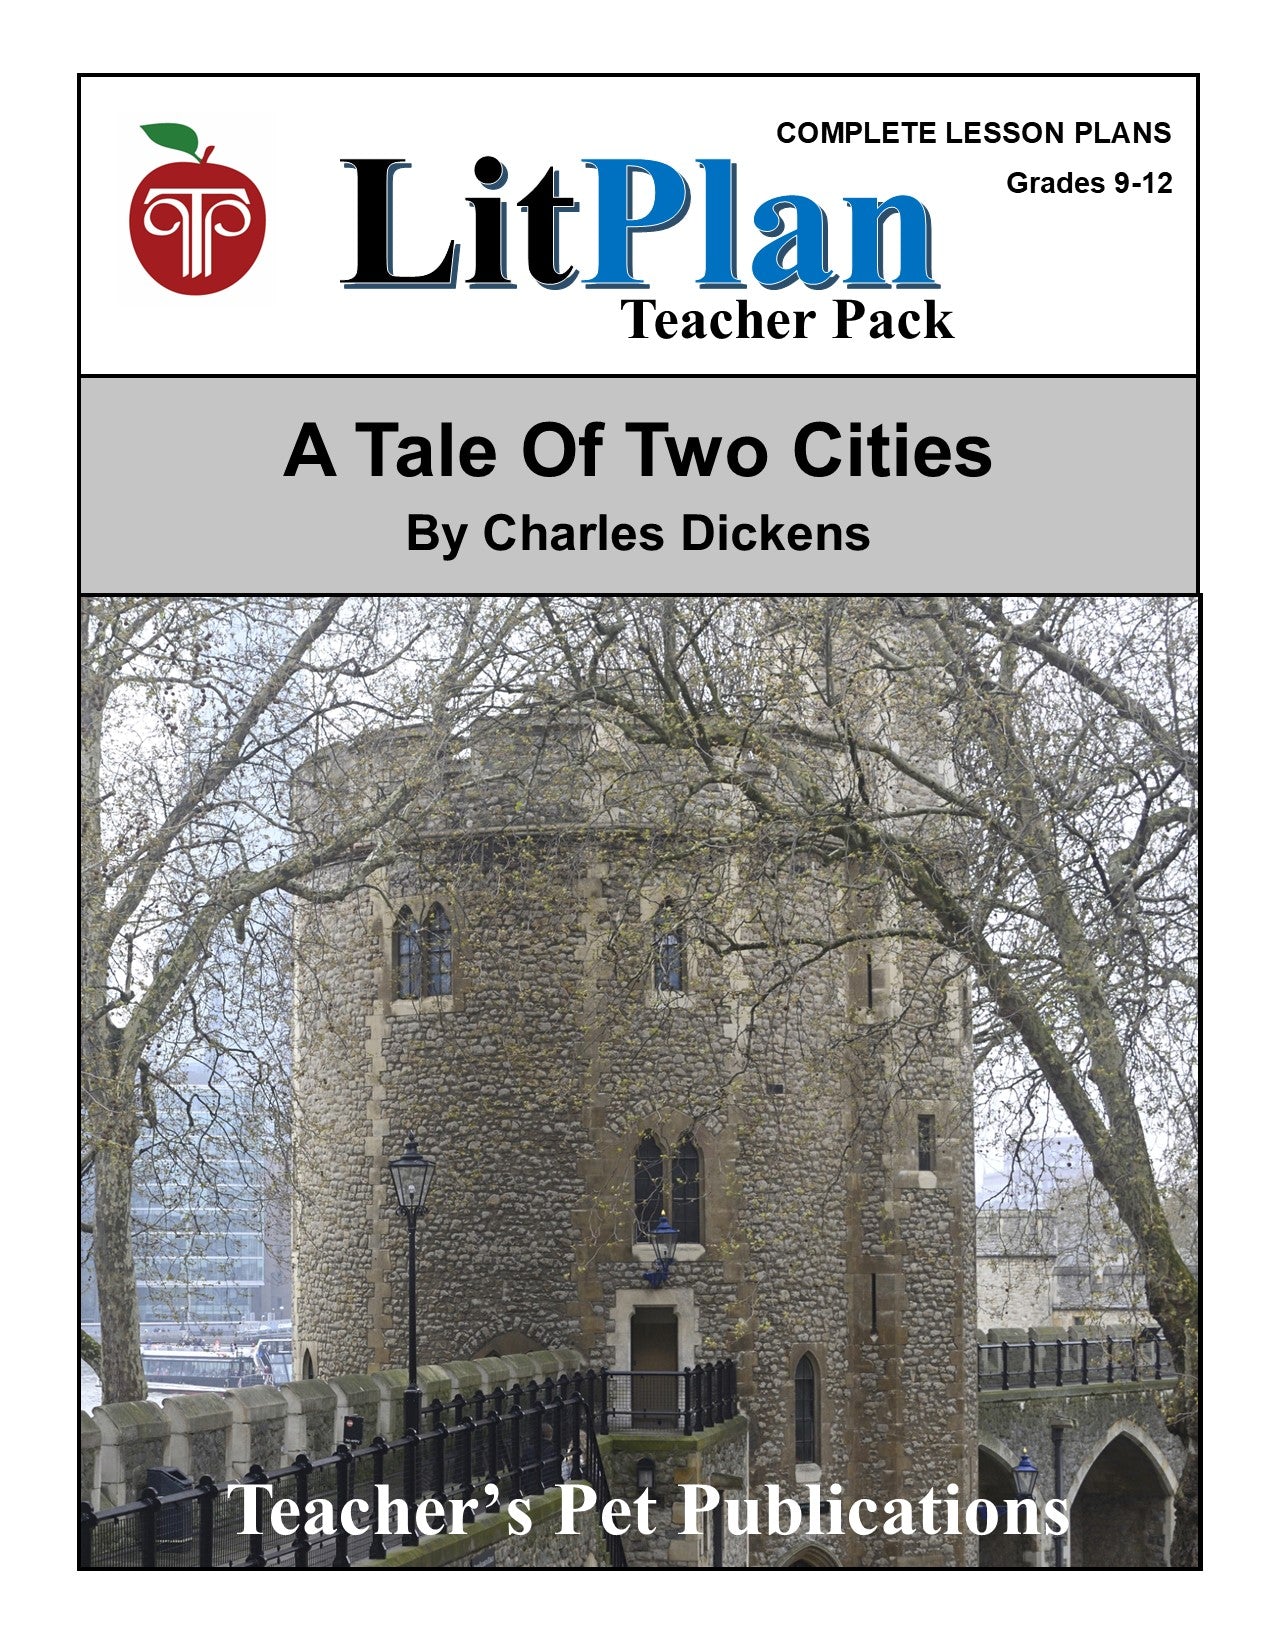 A Tale of Two Cities: LitPlan Teacher Pack Grades 9-12